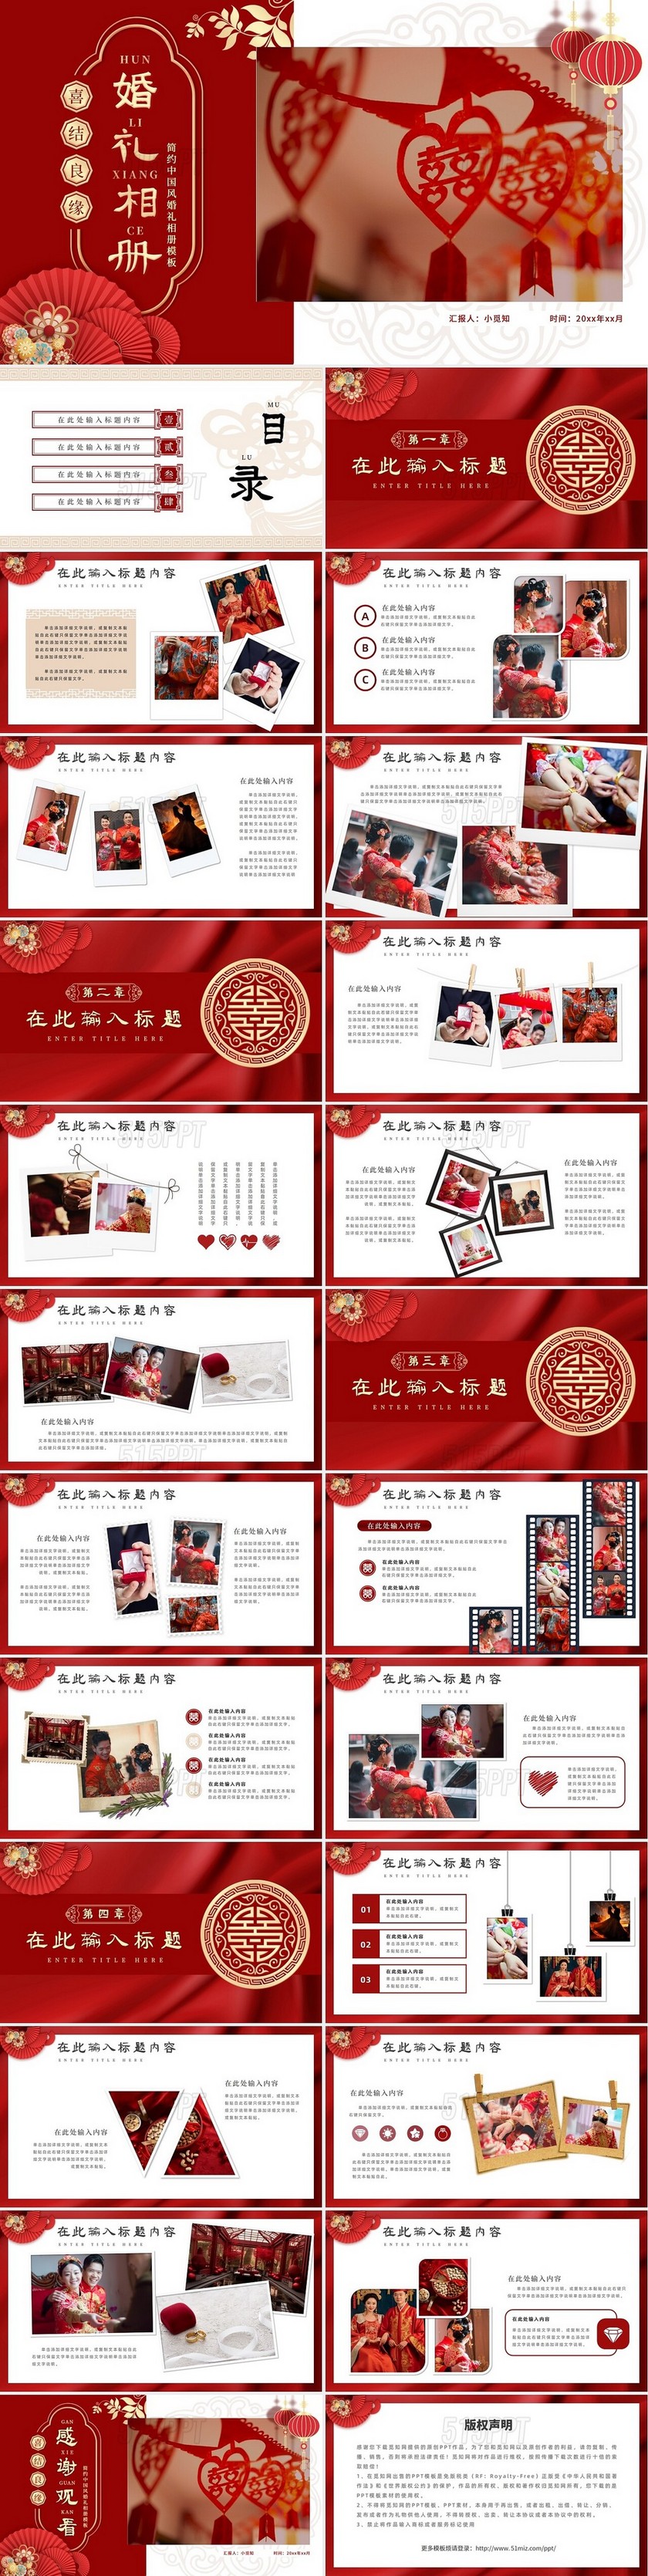 红色简约中国风婚礼相册模板